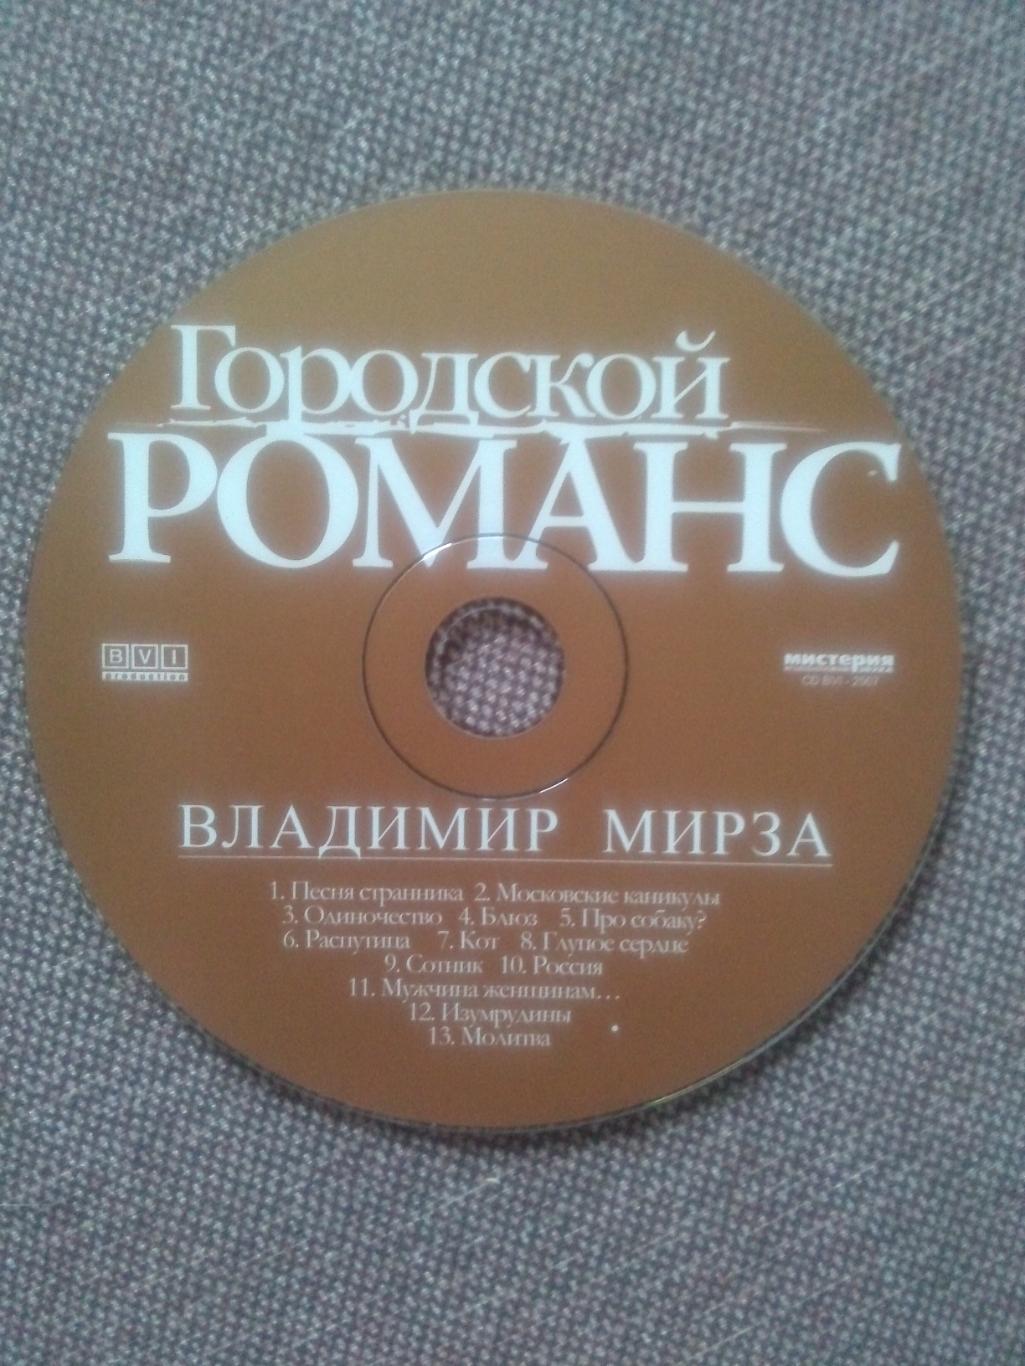 CD диск : Владимир Мирза -Городской романс2007 г. (Бард Шансон) 4